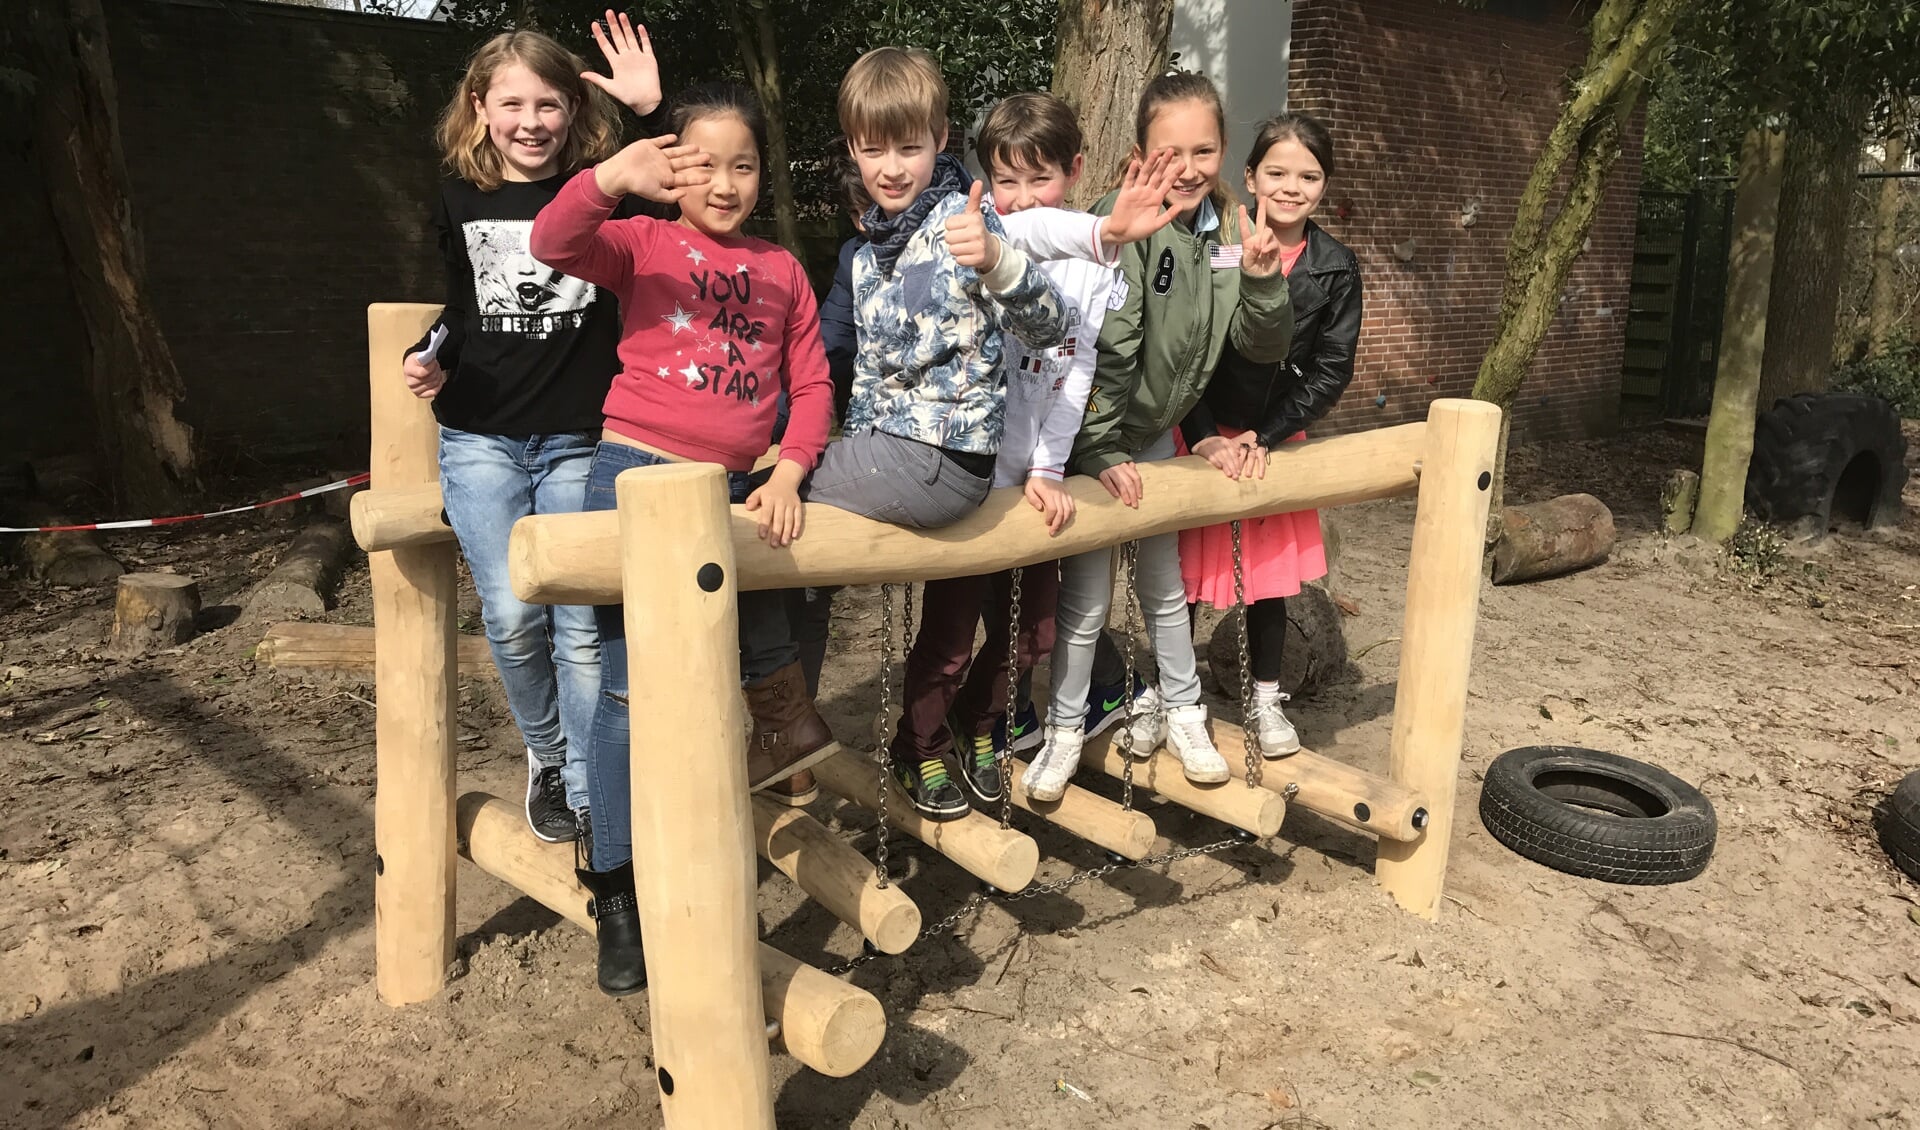 Op het schoolplein van de Bosbergschool in Hollandsche Rading is tot grote vreugde van de kinderen dankzij de Jumbo spaaractie inmiddels een Wiebel Robinia geplaatst.